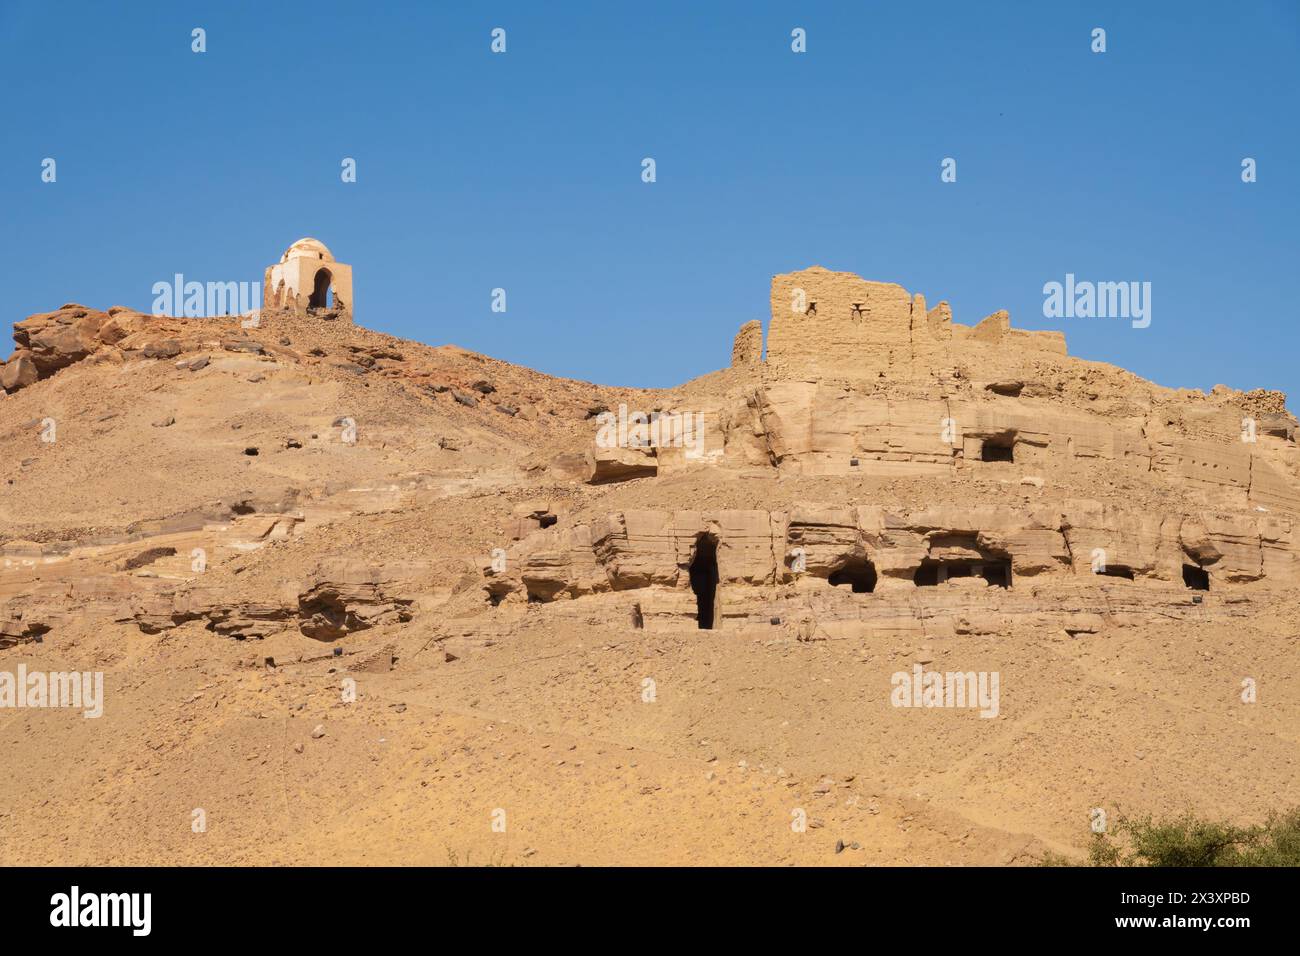 Dôme du fort abu Al-Hawa, et grottes désert du Sahara, Assouan, fleuve Nil, Egypte Banque D'Images